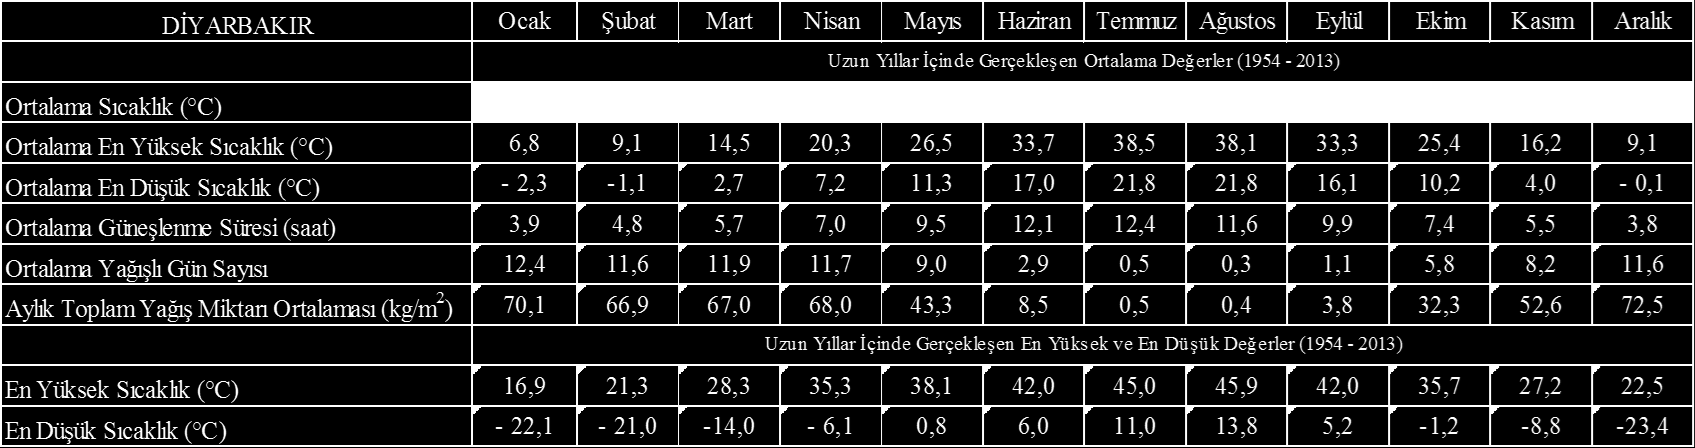 Tablo 2.2.2. Diyarbakır ili yıllık meteorolojik verileri [16] Tablo 2.2.3.